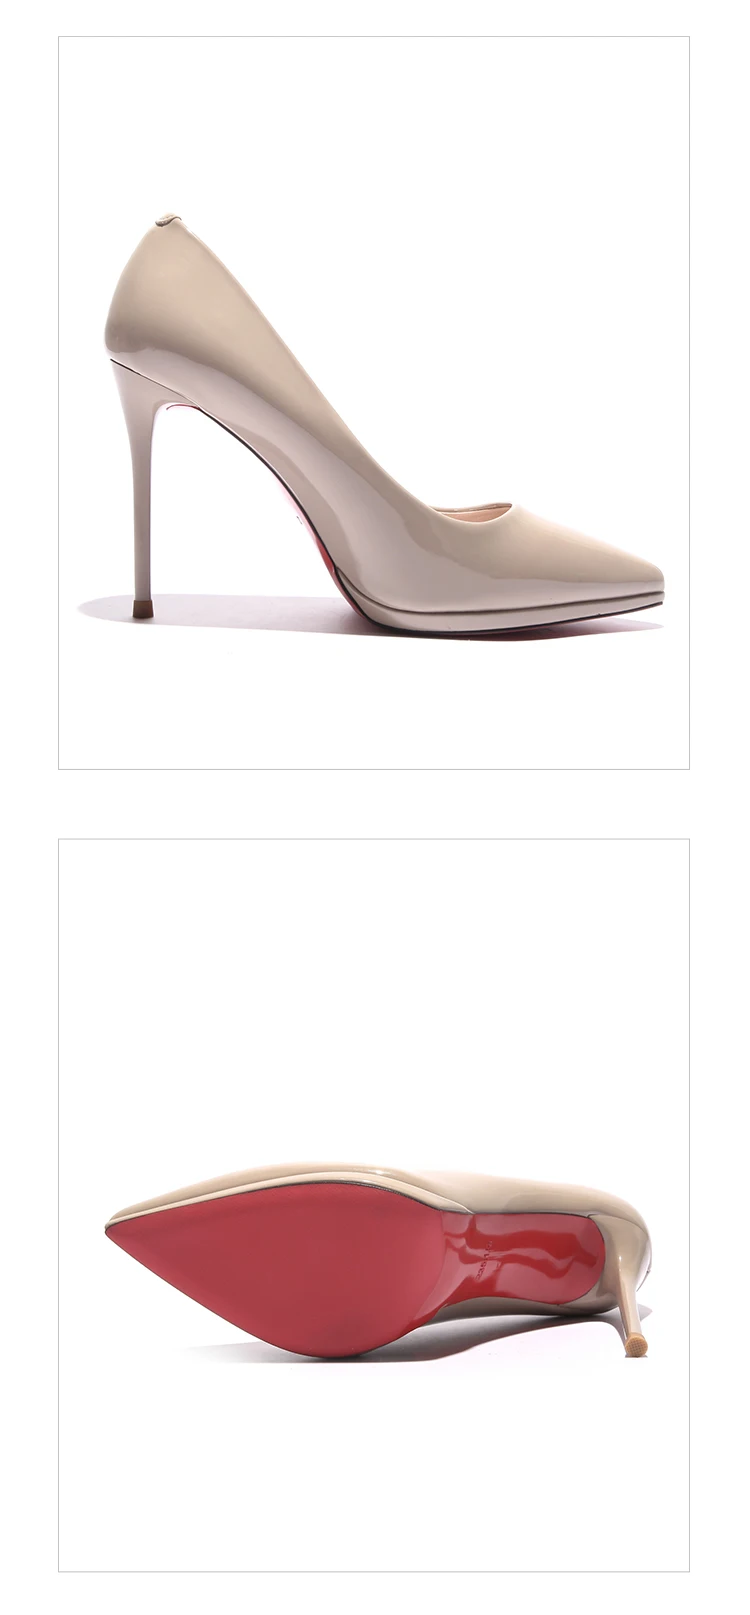 Kjstyrka/Коллекция года; zapatos de mujer; Брендовая обувь; женская обувь; модные женские туфли-лодочки с красной подошвой; женская обувь на тонком высоком каблуке 10 см